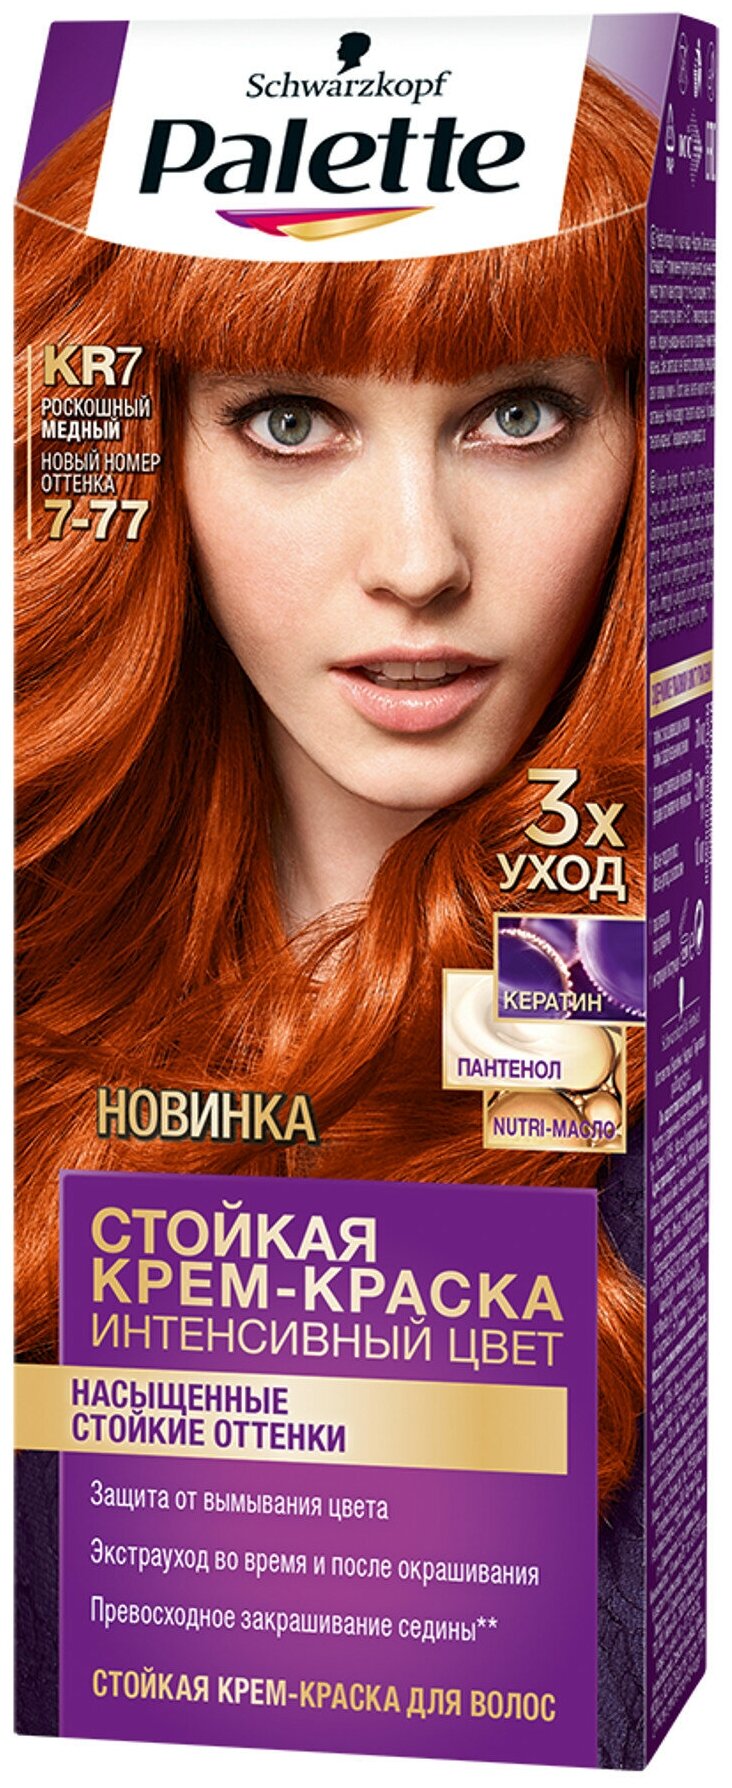 Palette Интенсивный цвет Стойкая крем-краска для волос, KR7 7-77 Роскошный медный, 110 мл (Турция)